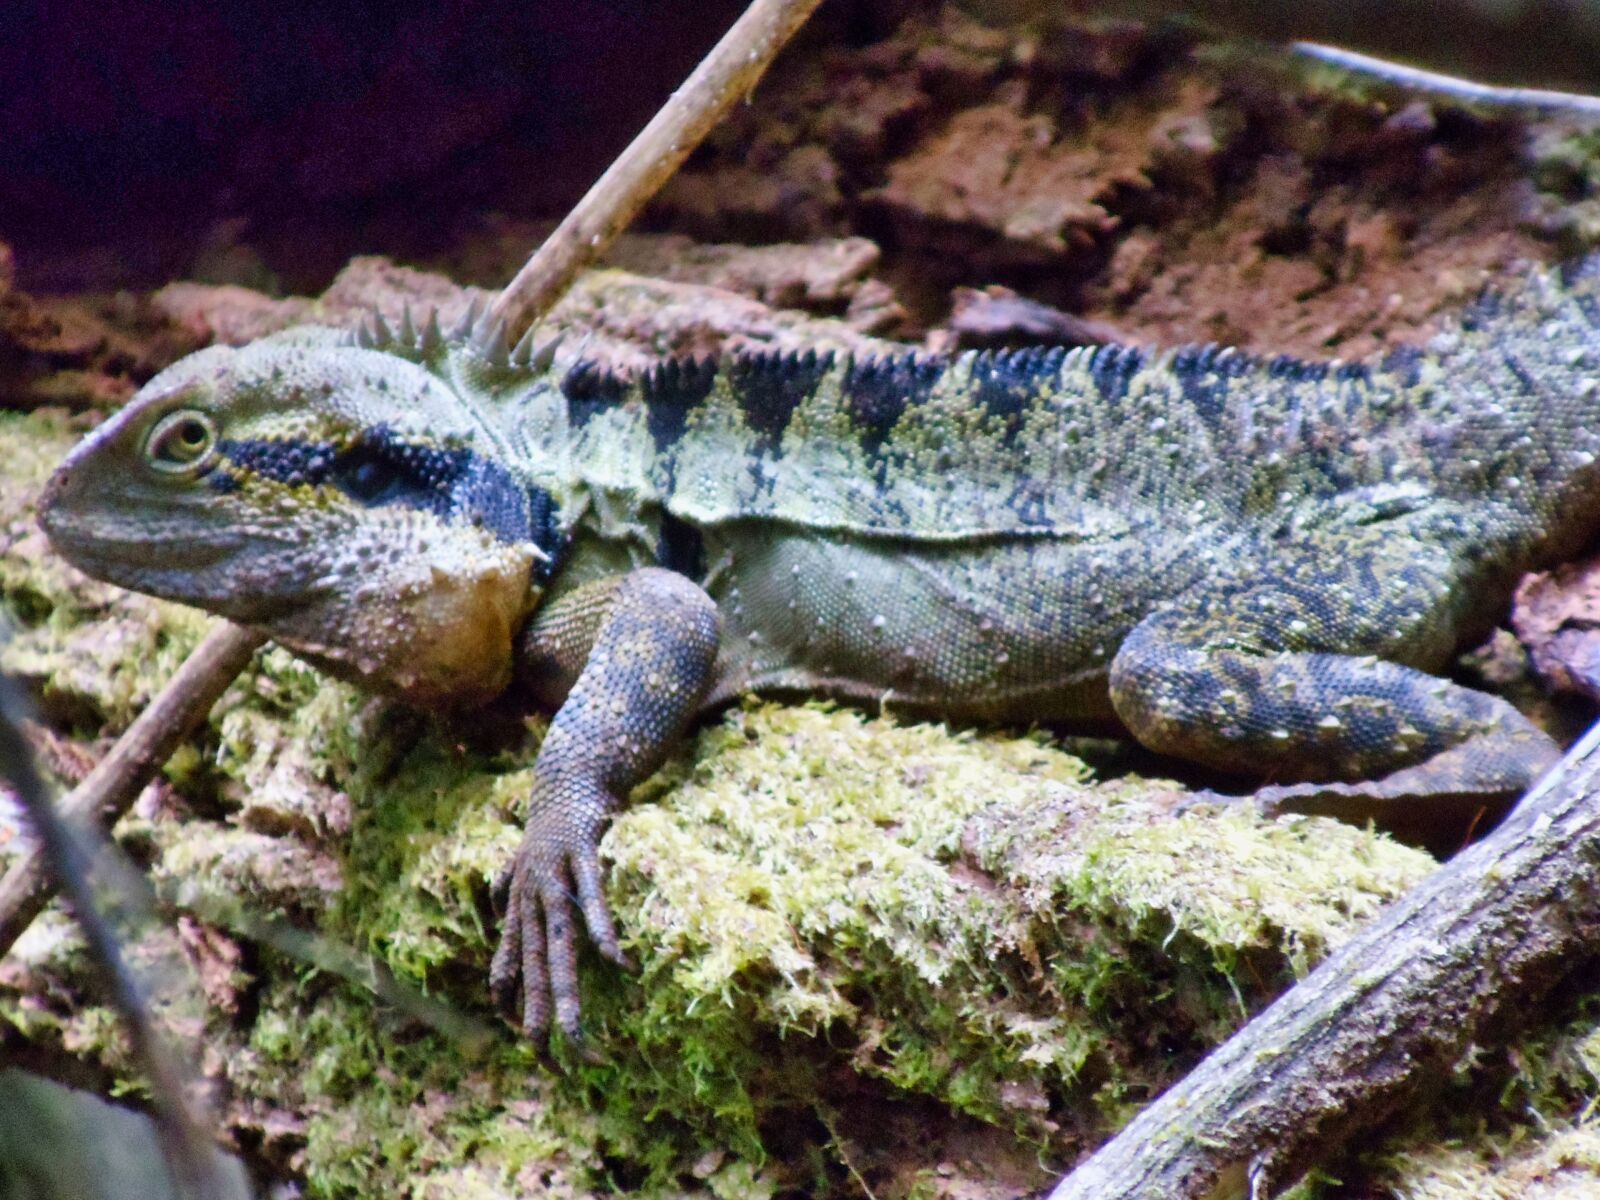 Sony DSC-W370 sample photo. "Iguana, wild, lizard" photography